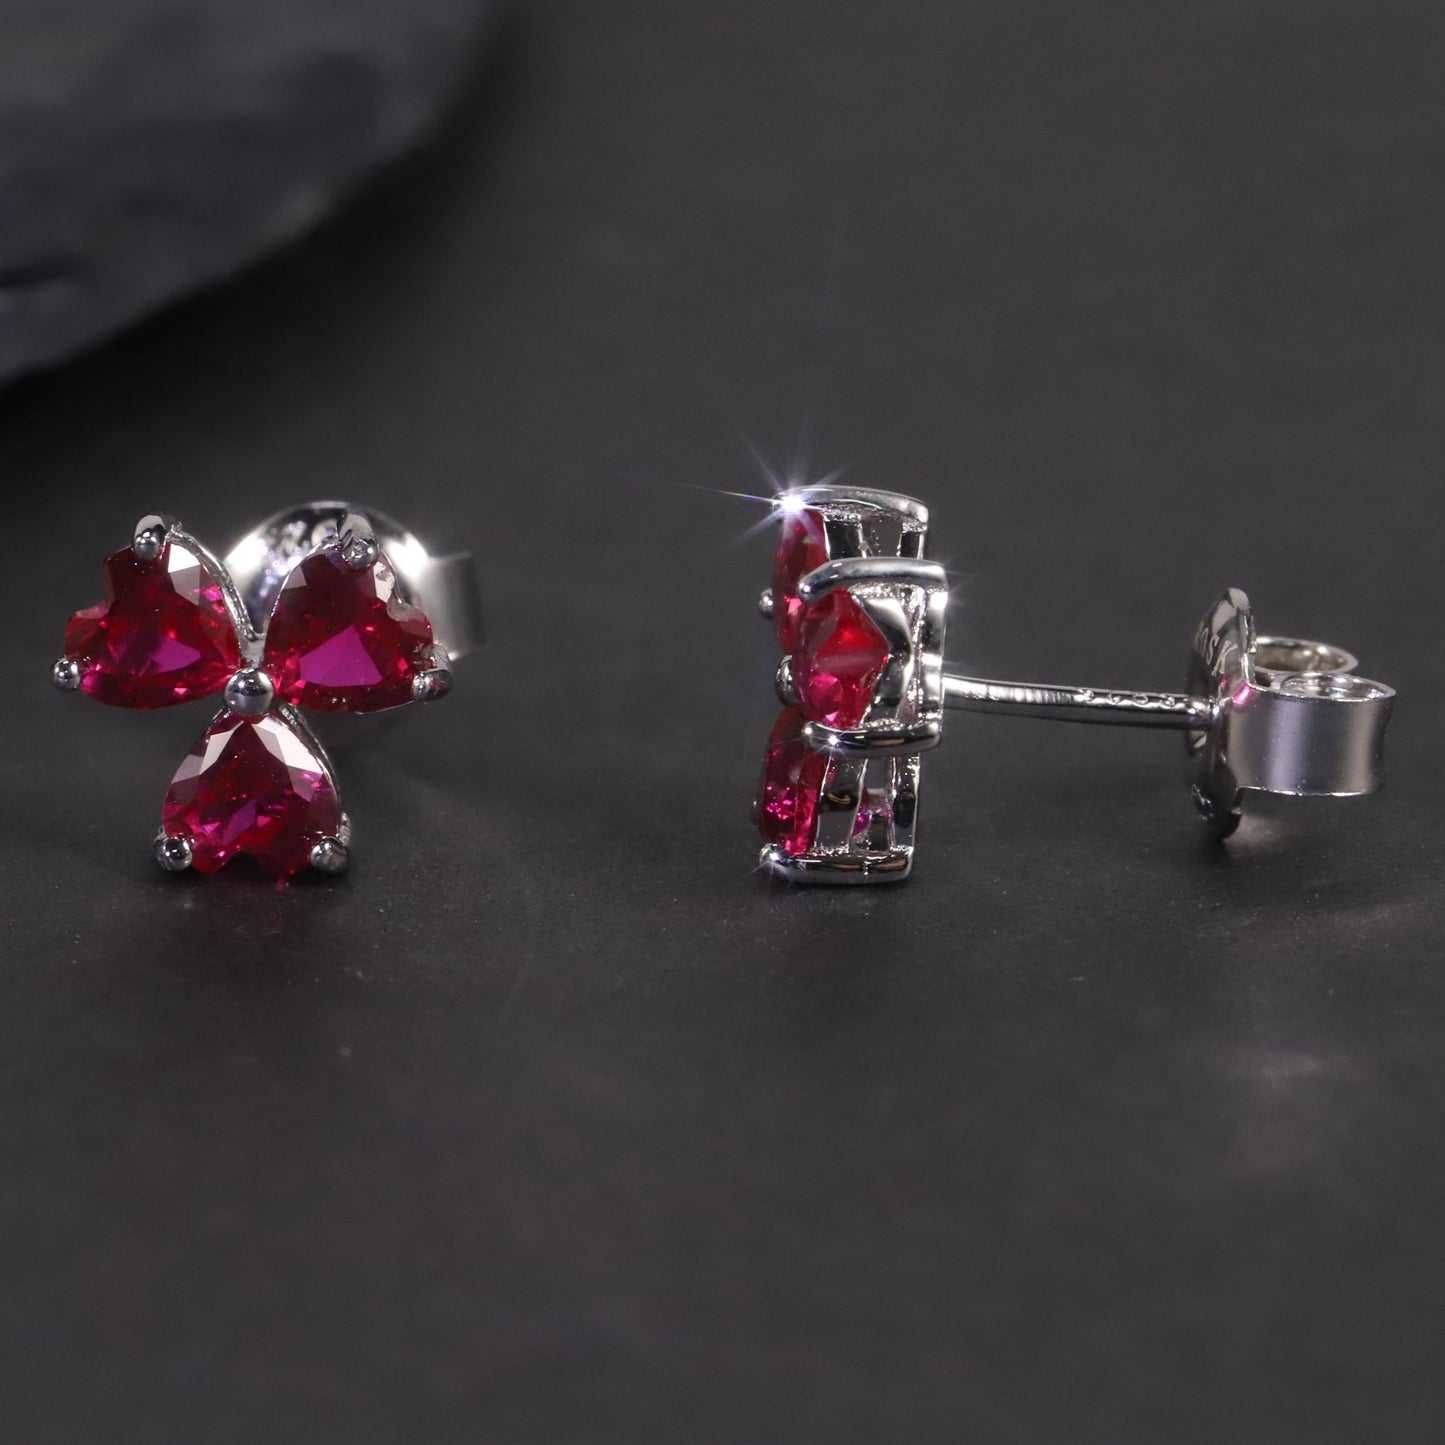 Flower Shape Stud Earrings in Sterling Silver -  Ruby